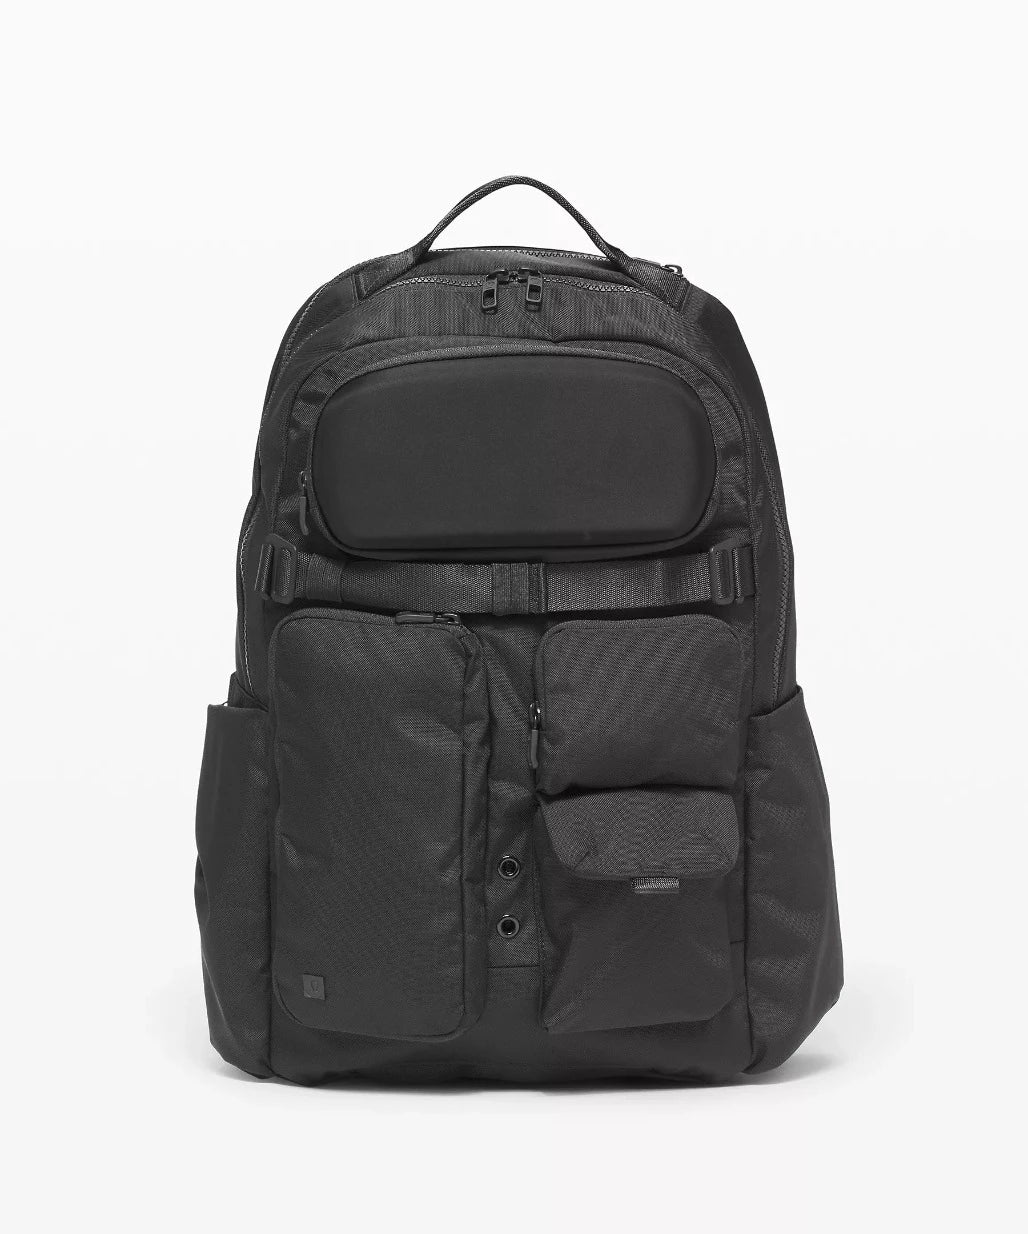 Lululemon Cruiser Backpack the best laptop backpacks – Mined